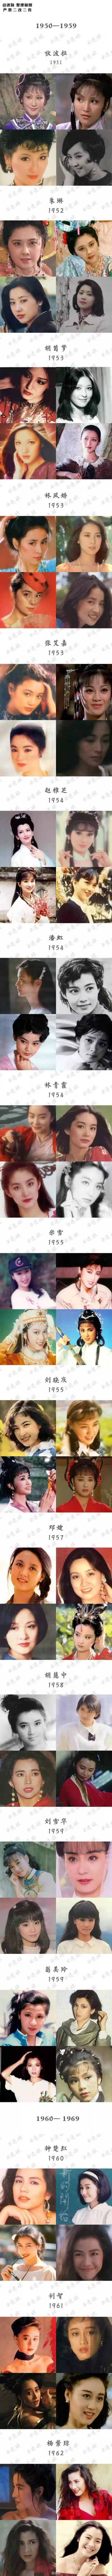 150位华人女演员（1950—1999年出生）颜值一览表
不仅是审美的变迁，更是时尚的轮回